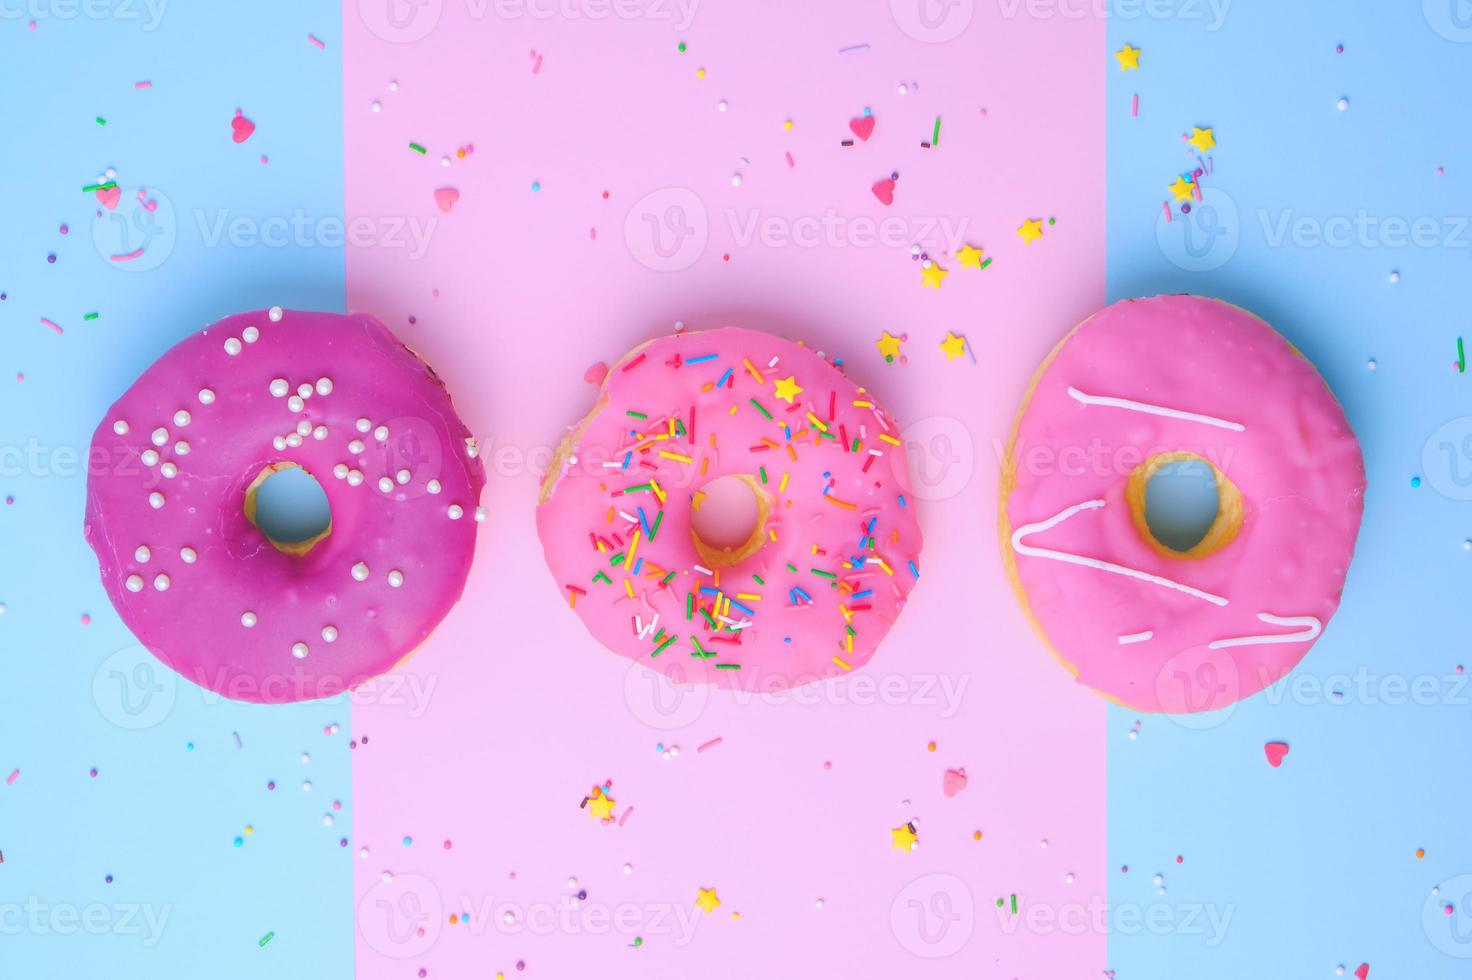 drei runde verschiedene süße donuts mit streuseln auf einem rosa-blauen hintergrund foto